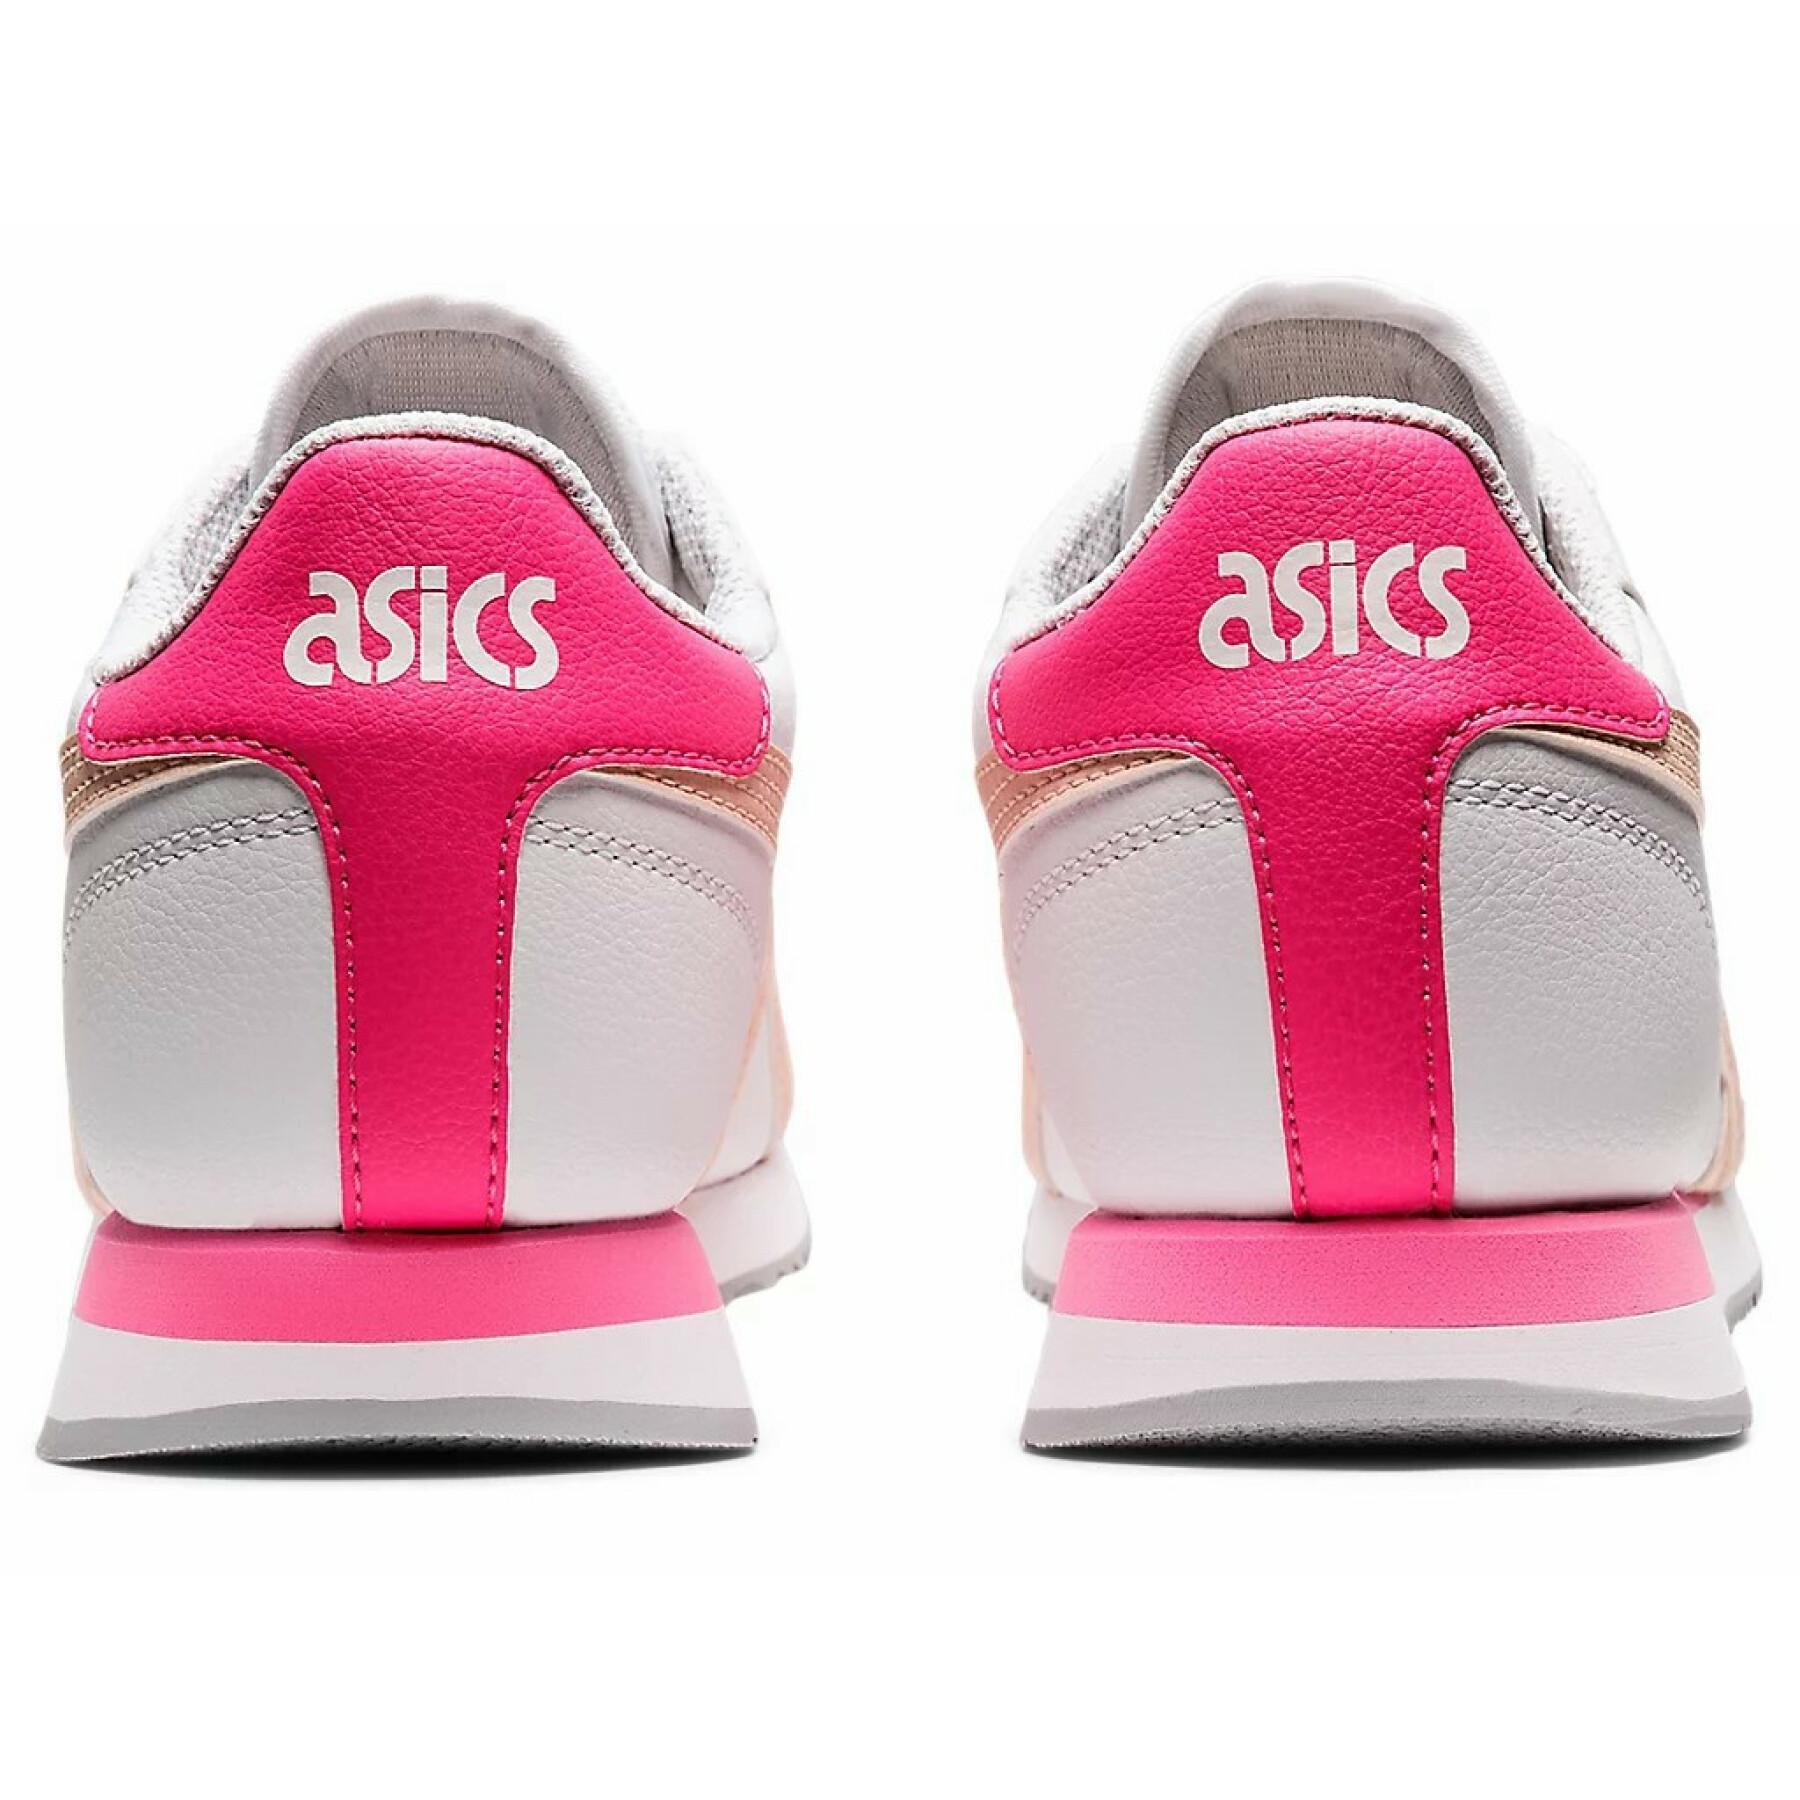 Schuhe für Frauen Asics Tiger Runner